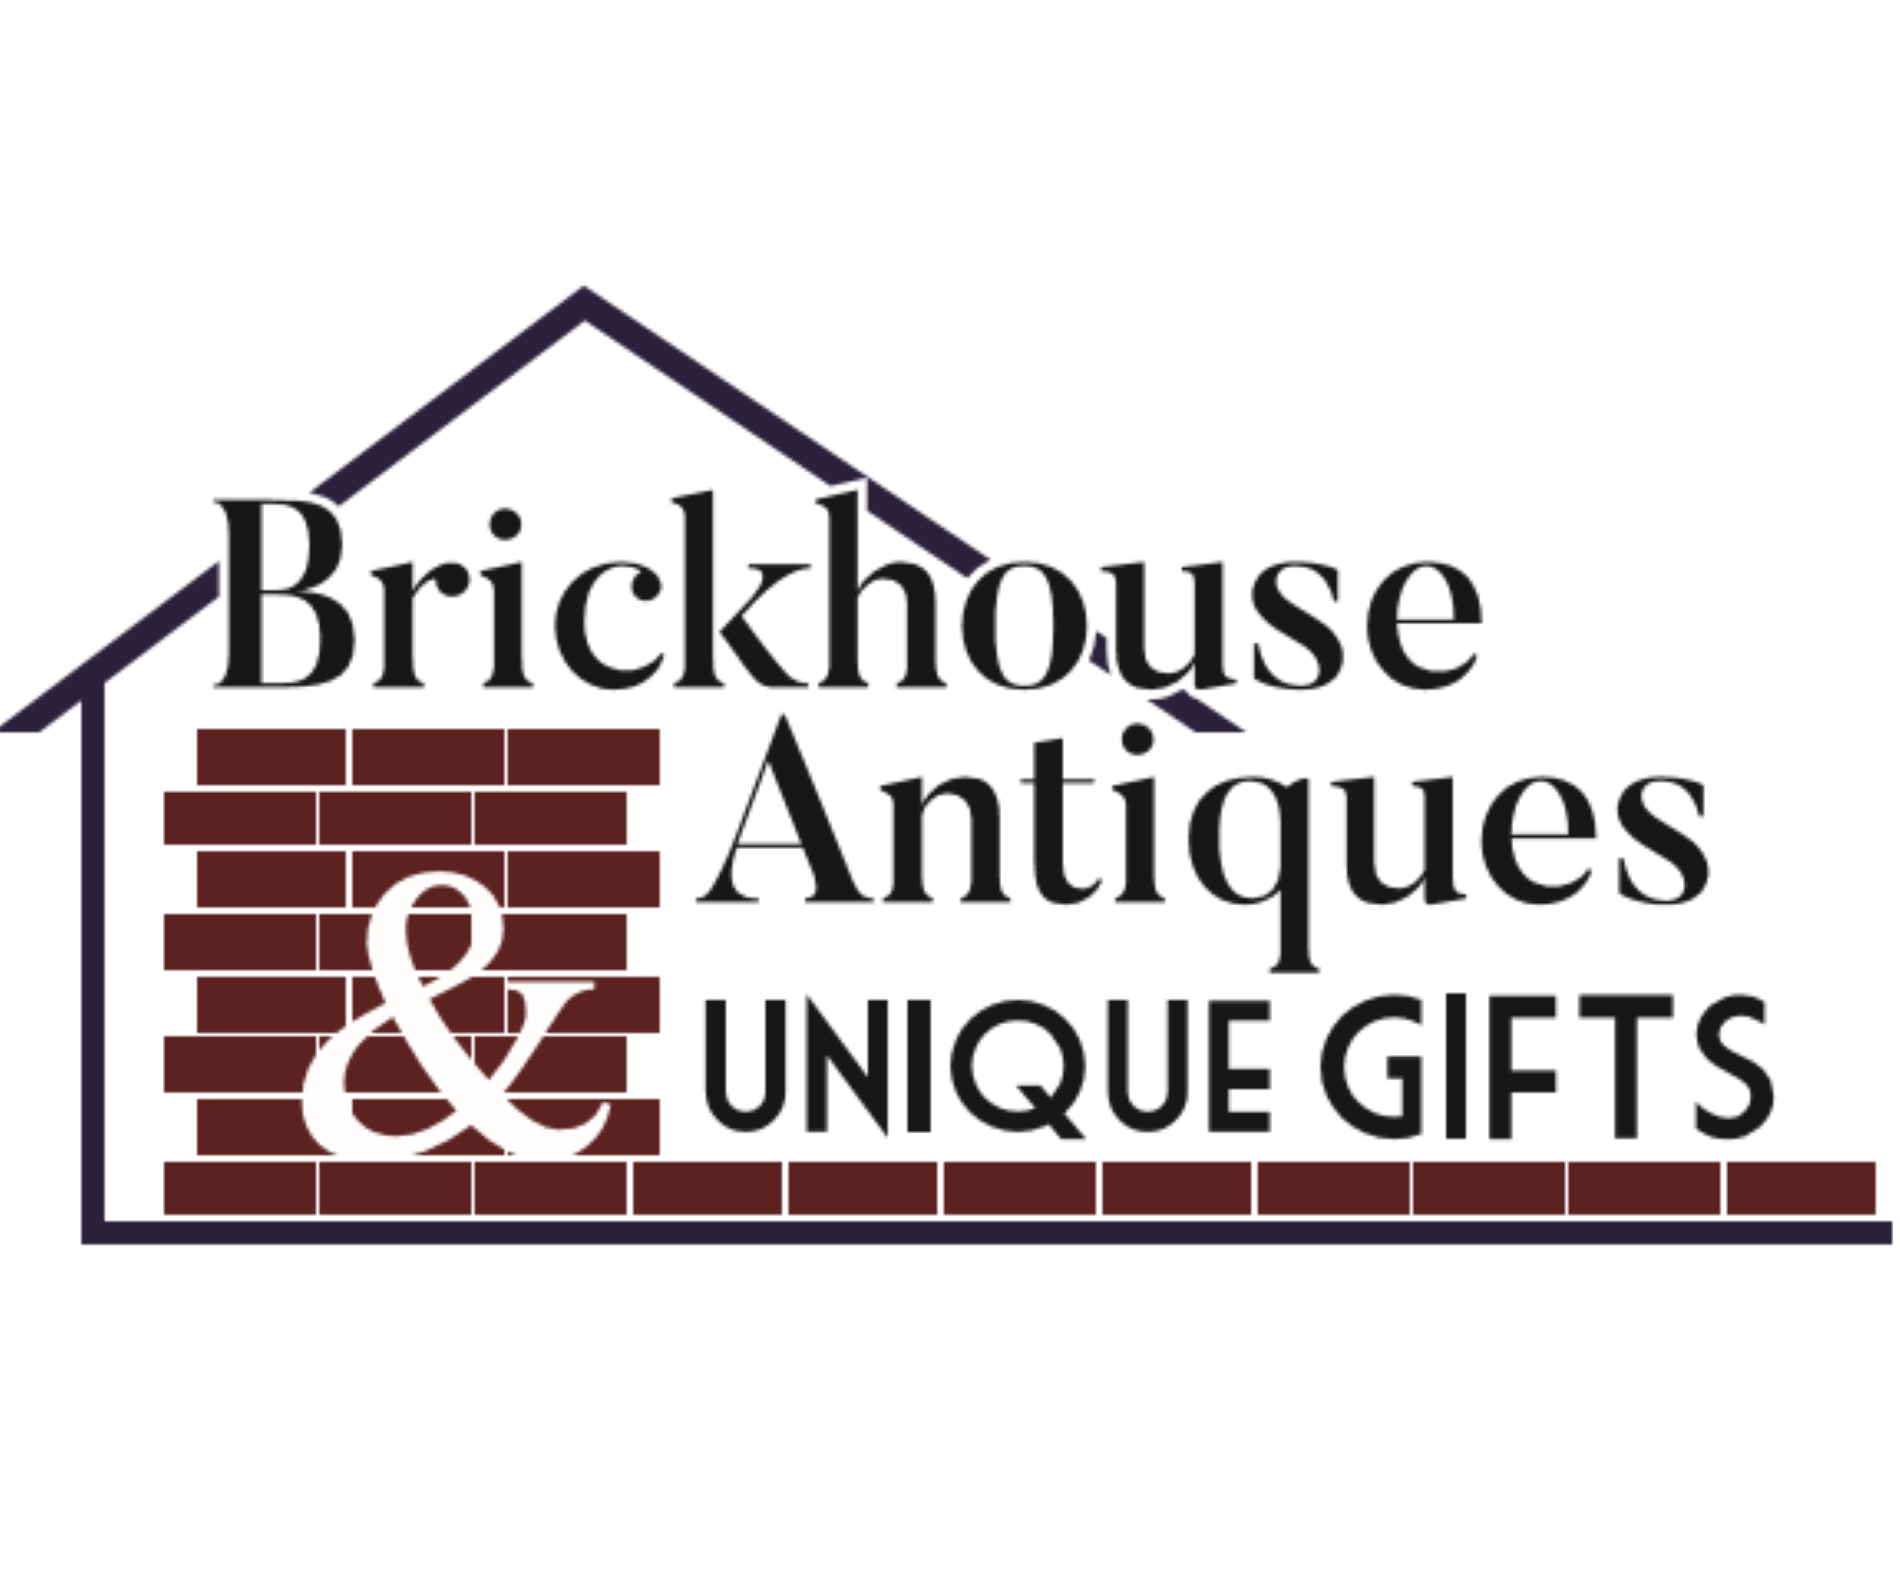 Brickhouse Antiques & Unique Gifts